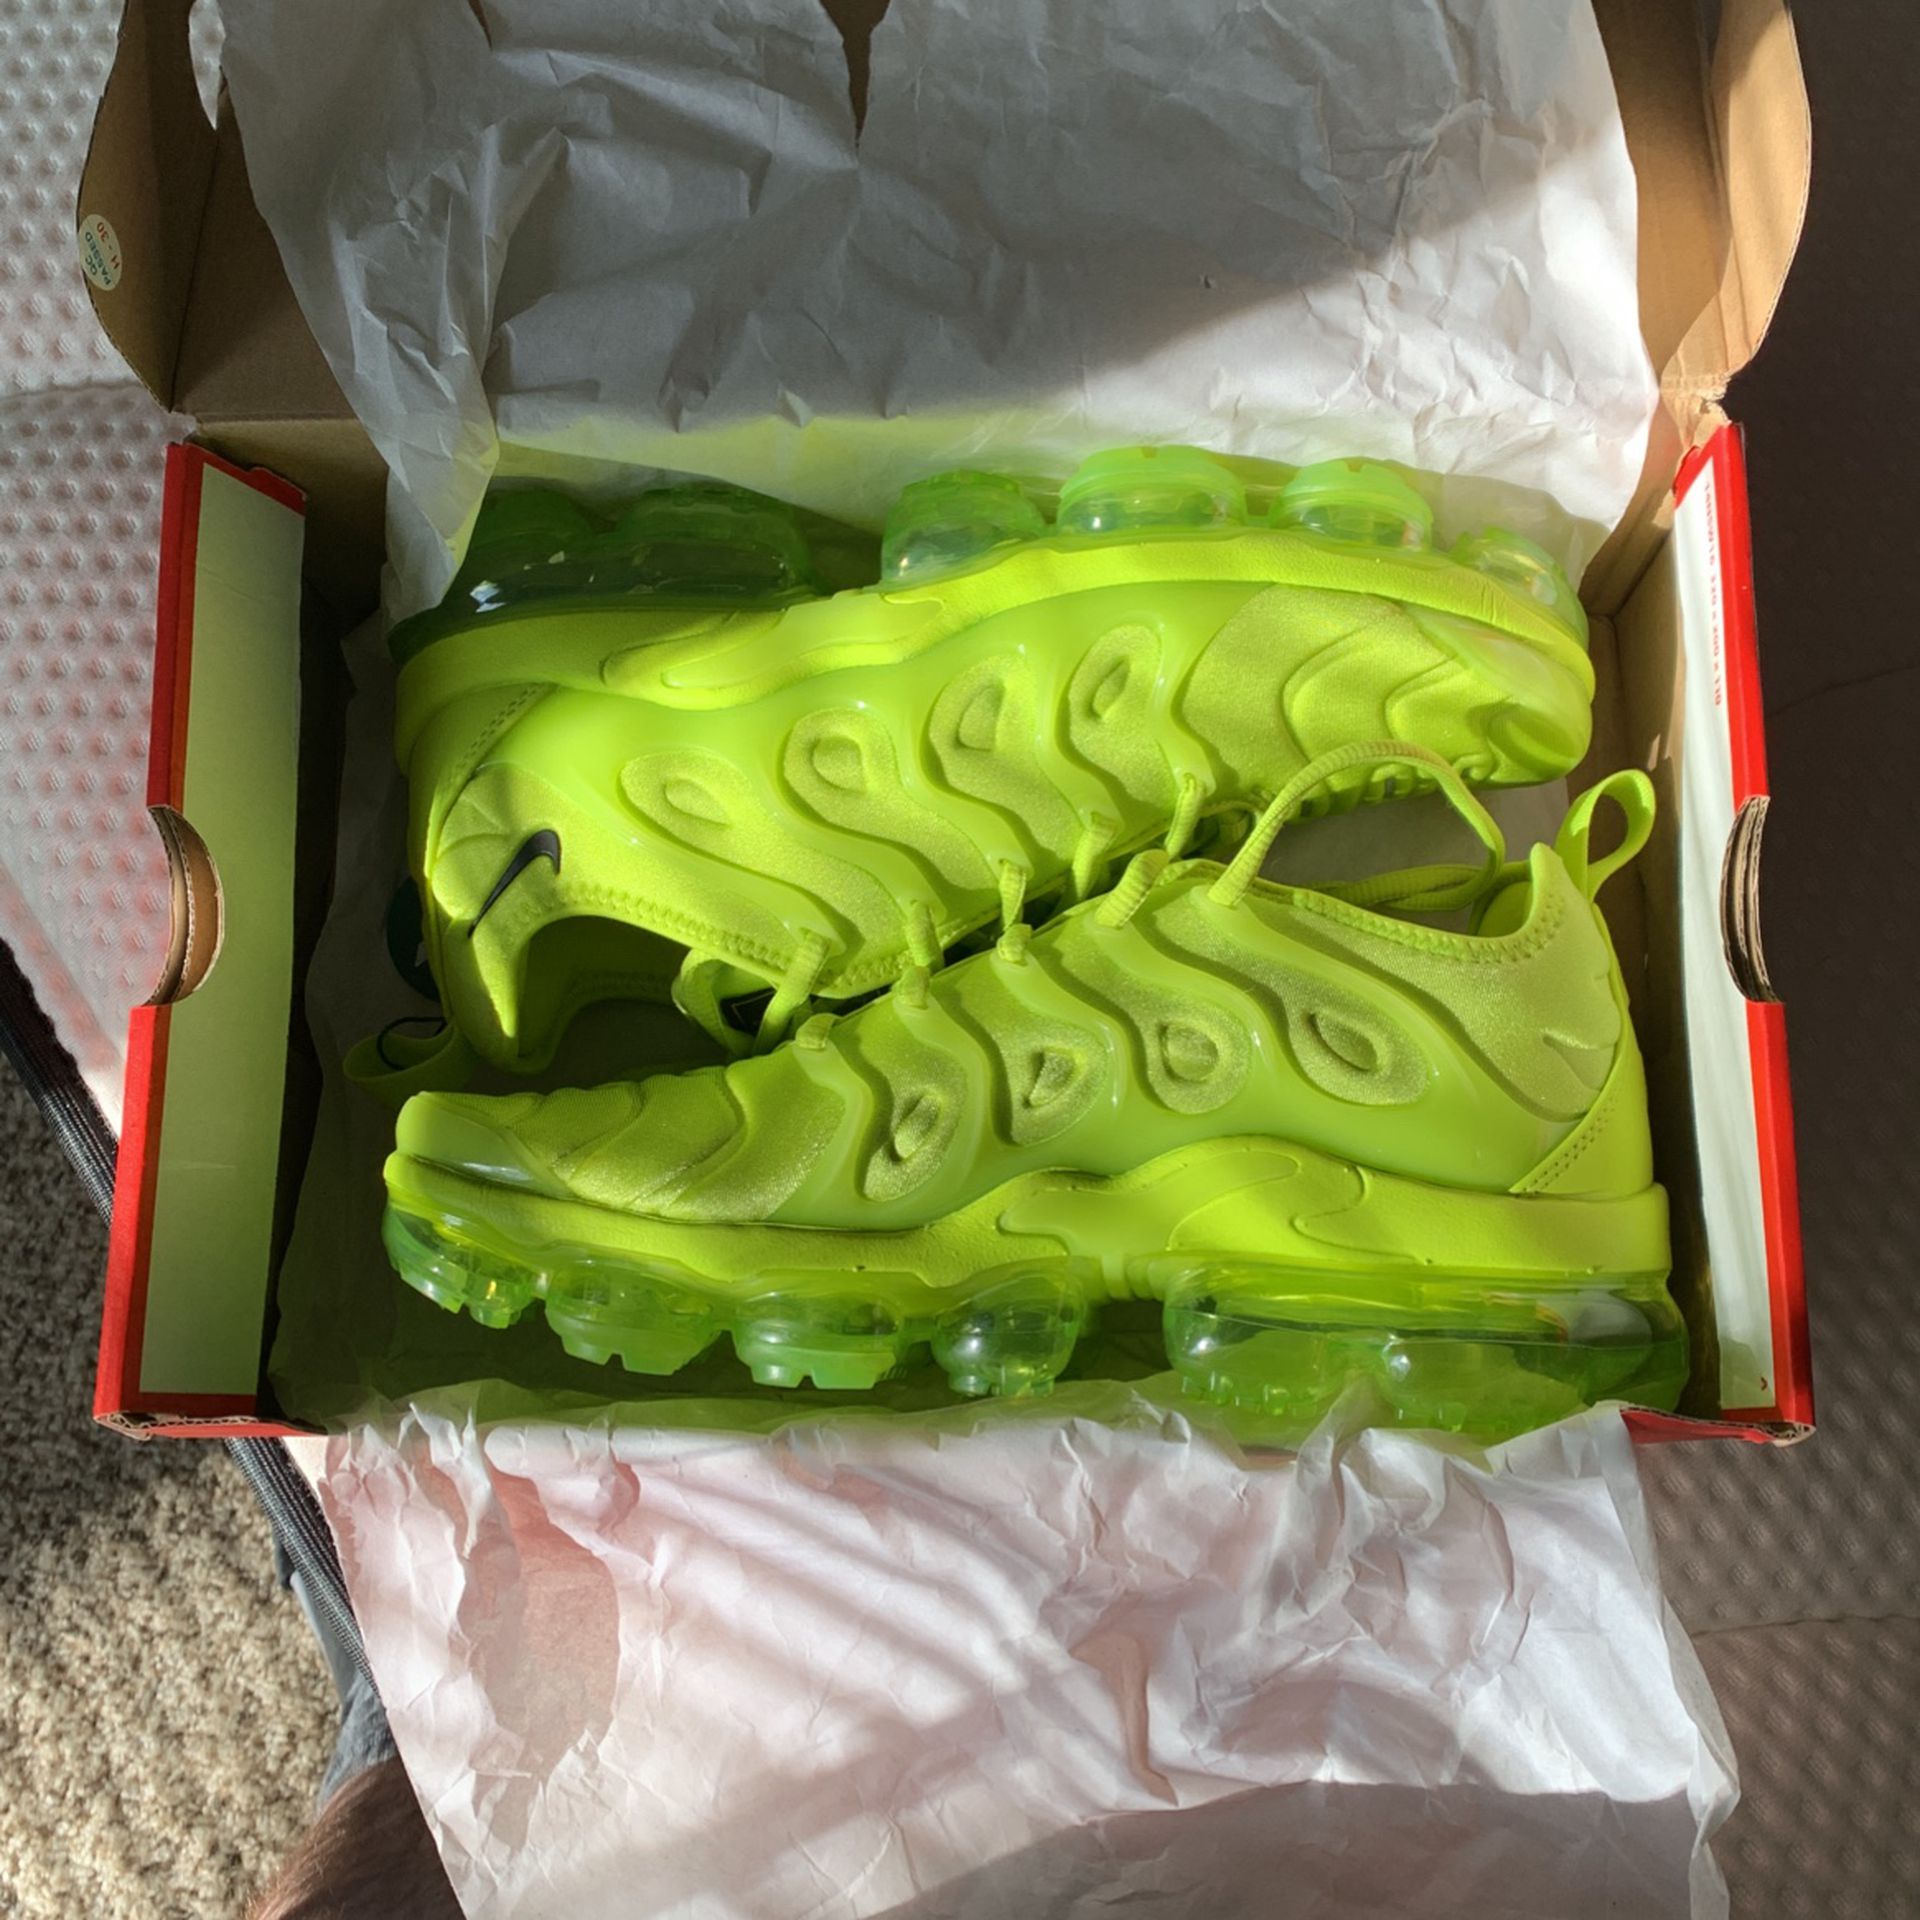  Size 9w / 7m Lime Green Nike vapor Max Plus 